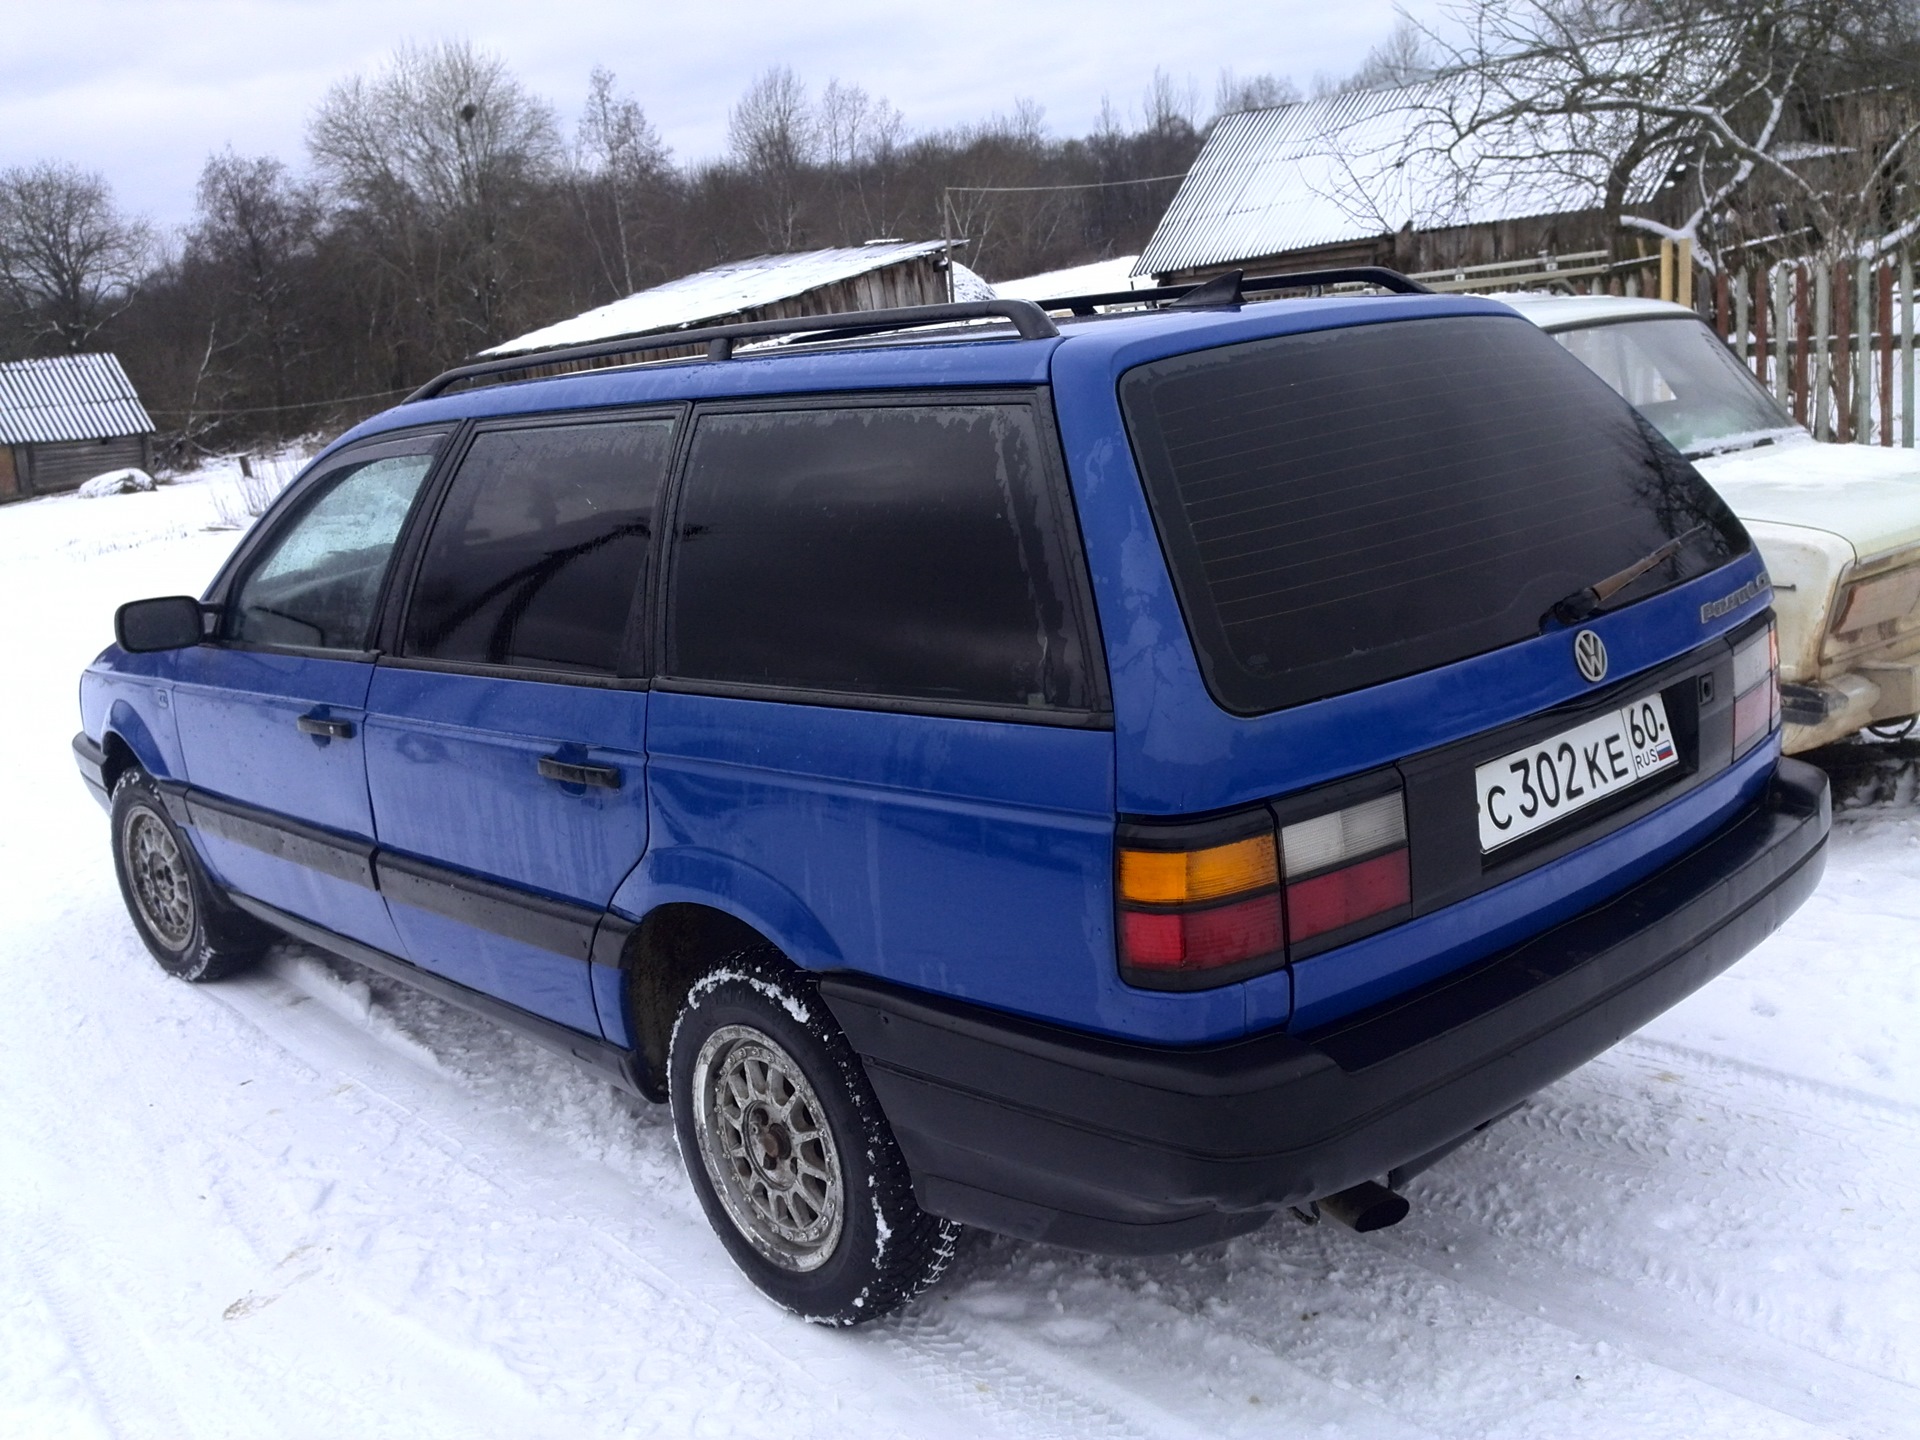 Купить б у универсал на авито. Пассат б3 универсал. Фольксваген Пассат 1989 универсал. Volkswagen Passat b3 Wagon. Пассат б3 универсал синий.